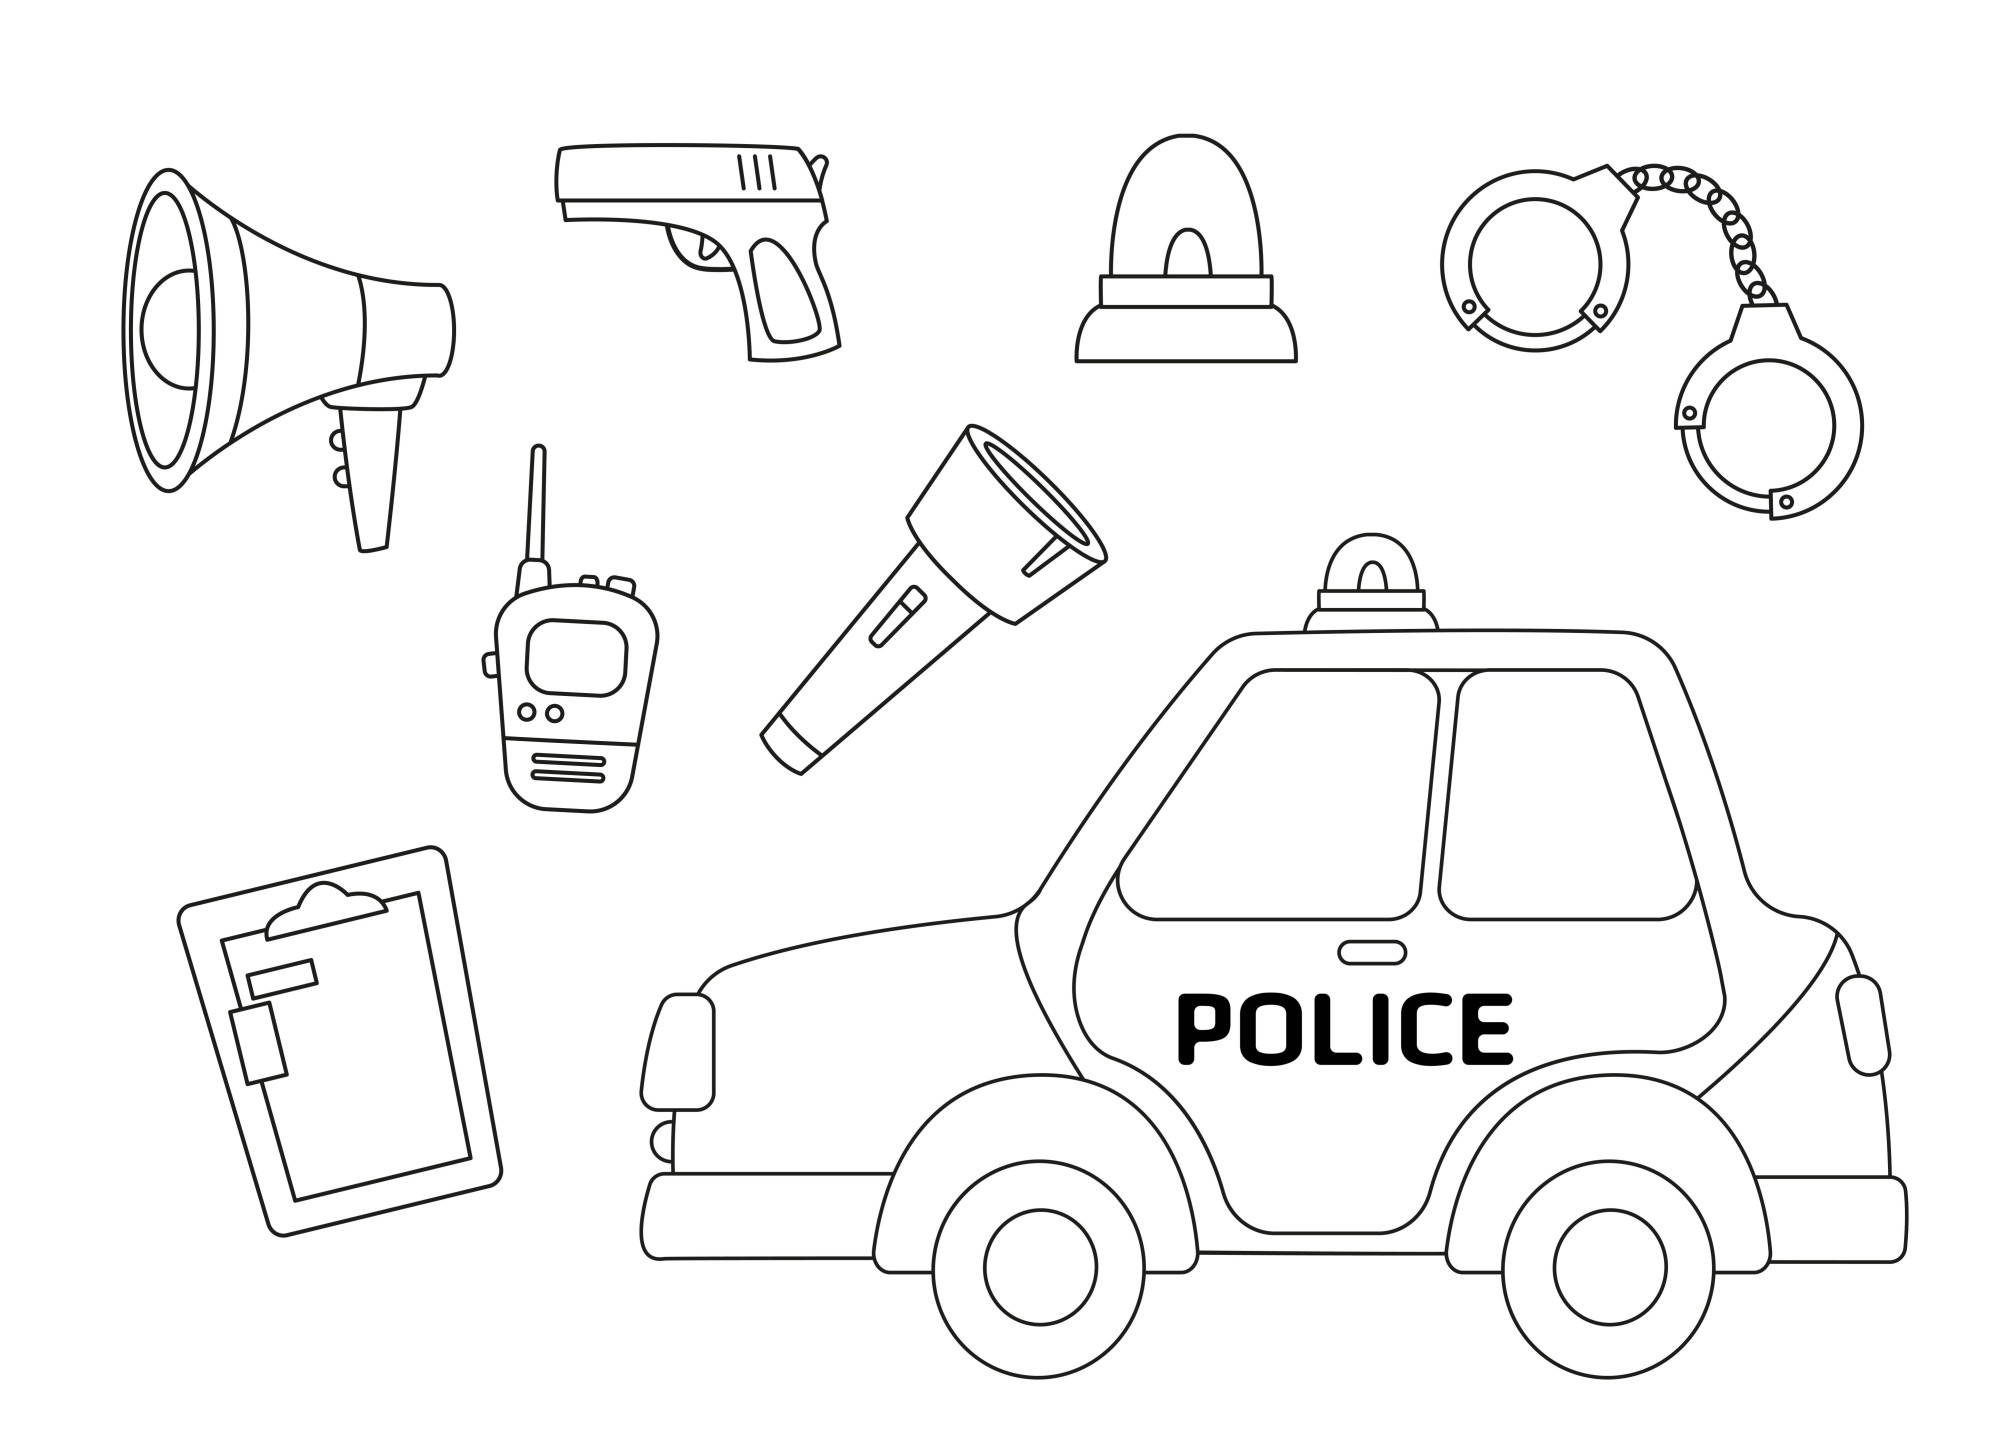 Раскраска для детей: полицейский автомобиль и снаряжение